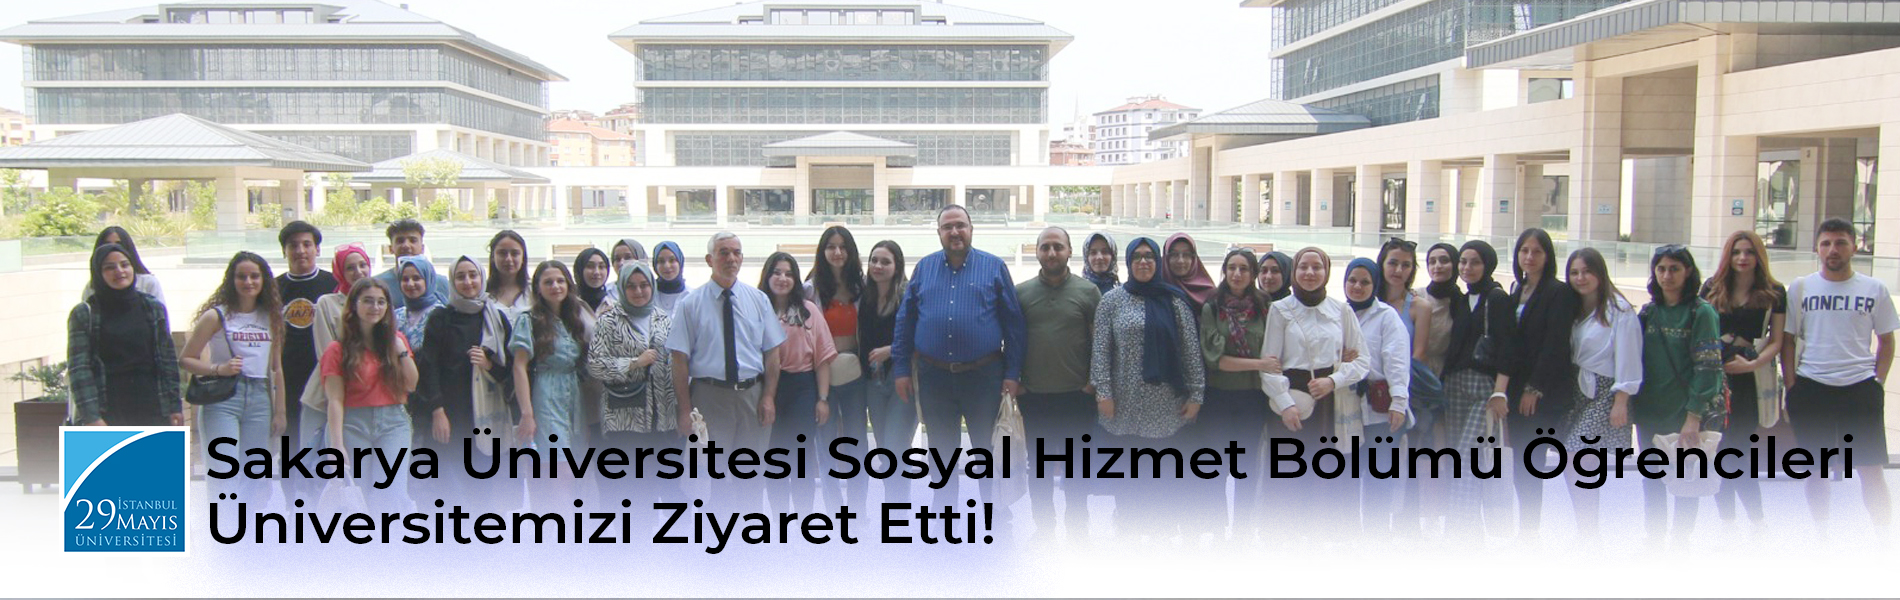 Sakarya Üniversitesi Sosyal Hizmet Bölümü Öğrencileri Üniversitemizi Ziyaret Etti!